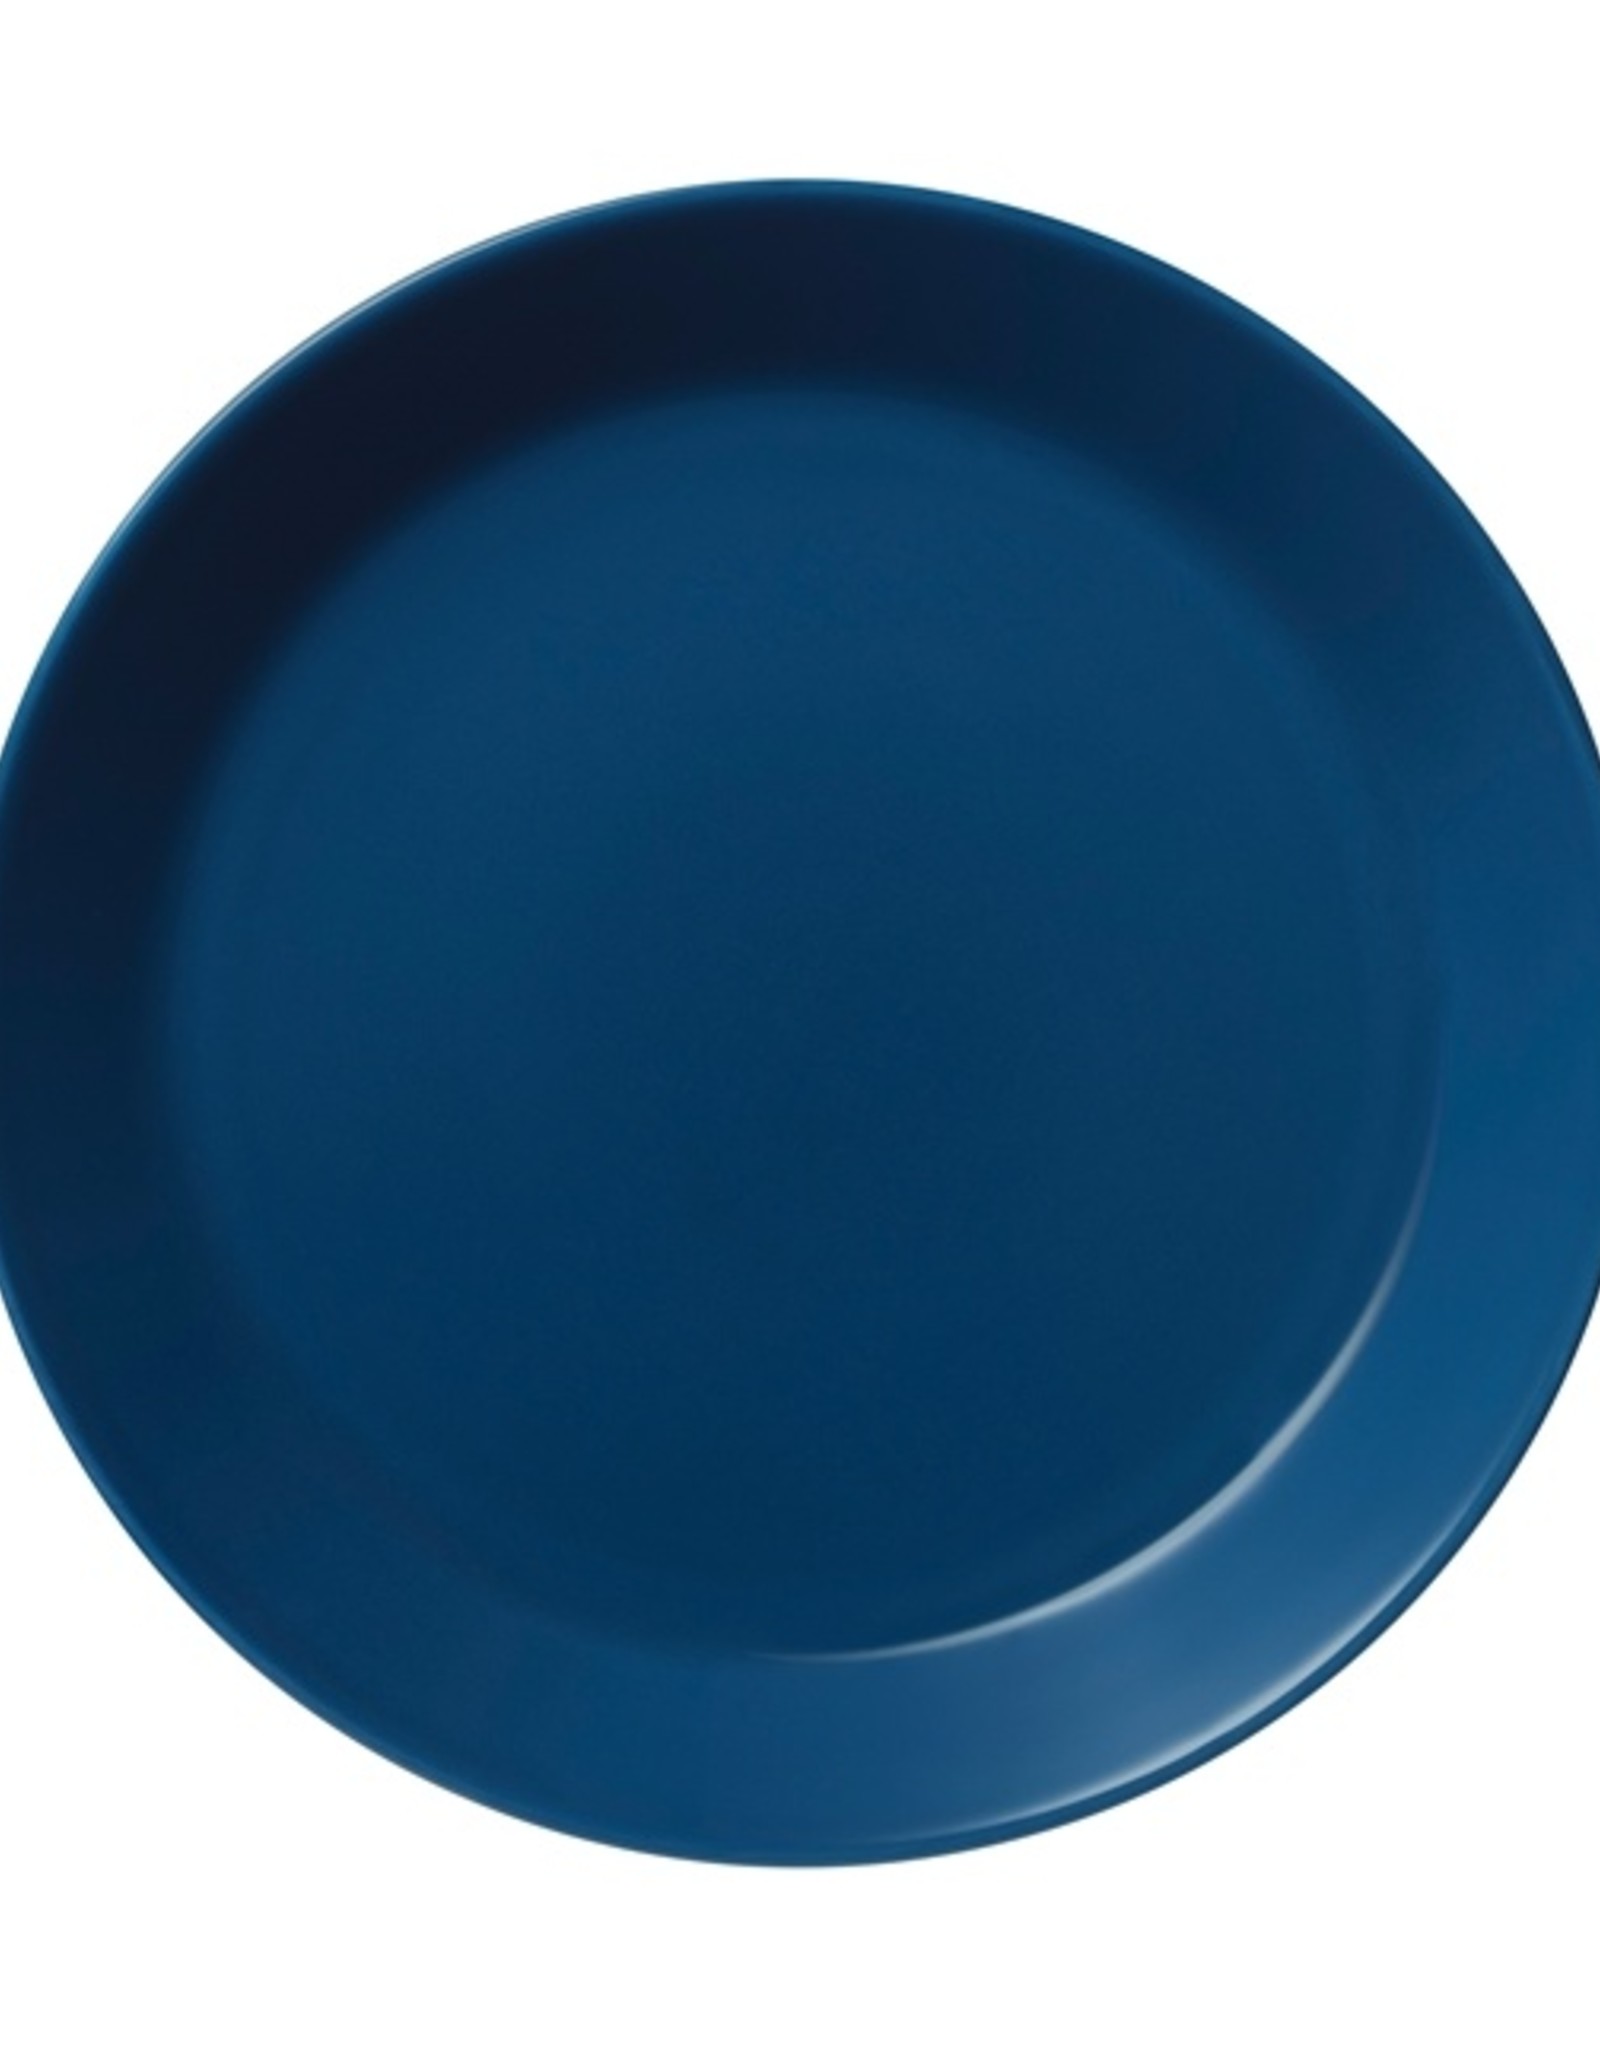 Iittala Iittala -Teema - assiette- Ø 23 cm - Bleu vintage